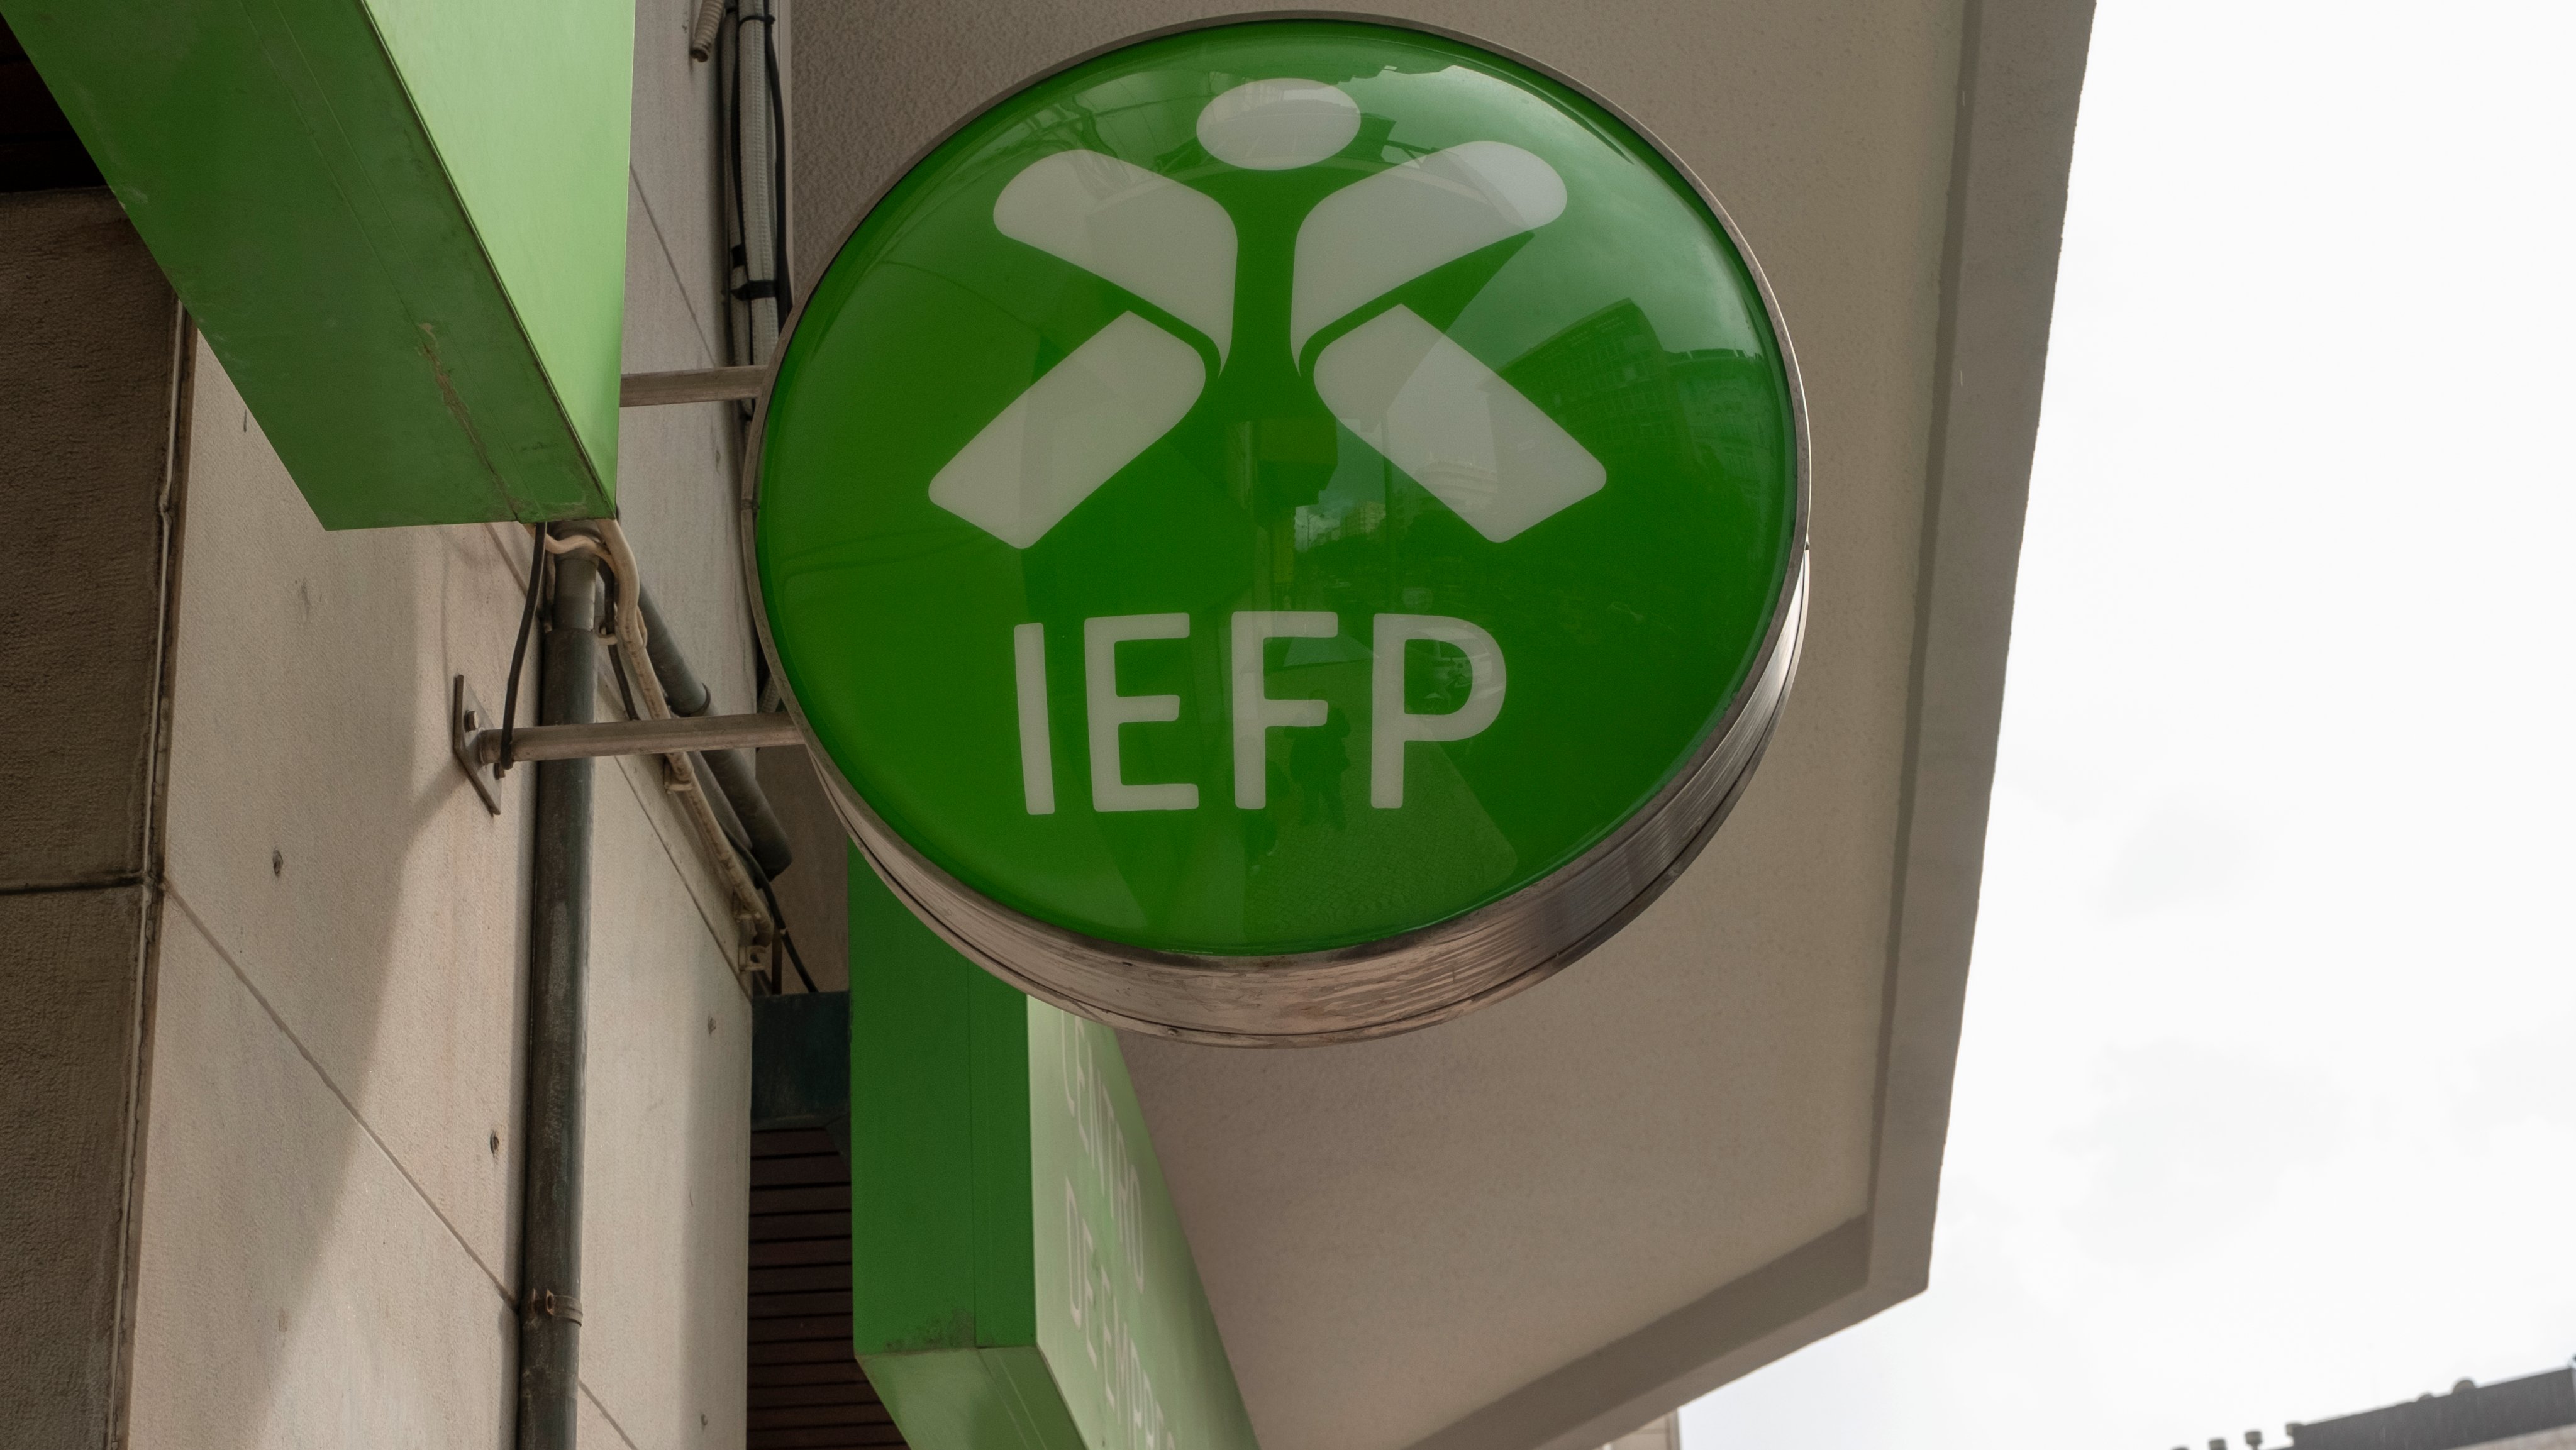 O logotipo do IEFP -- Instituto do Emprego e Formação Profissional